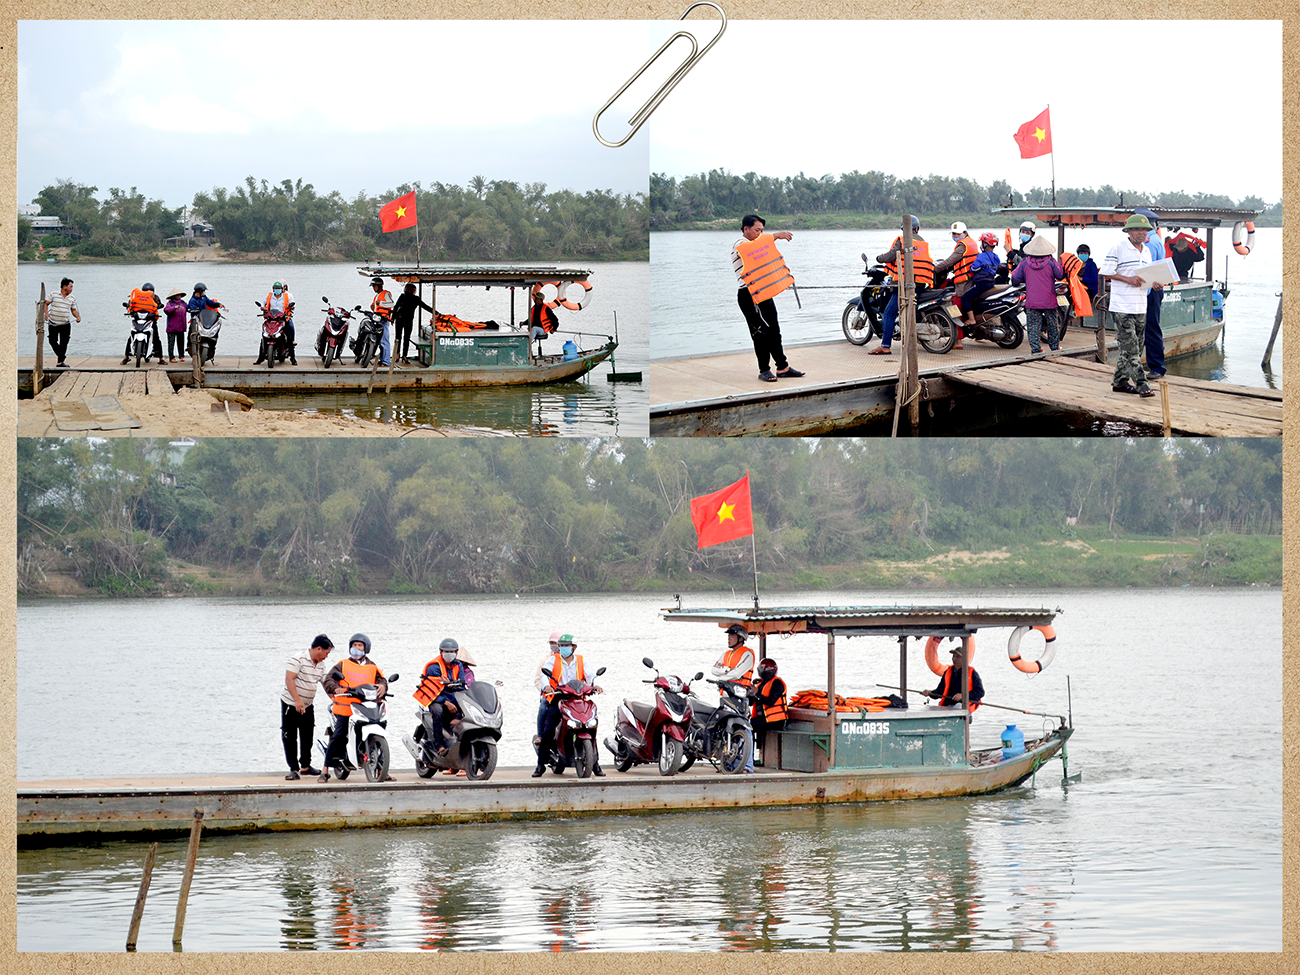 Trên sông Thu Bồn, bến khách ngang sông Duy Tân (Duy Xuyên) hoạt động chở khách qua bờ Đại Lộc.